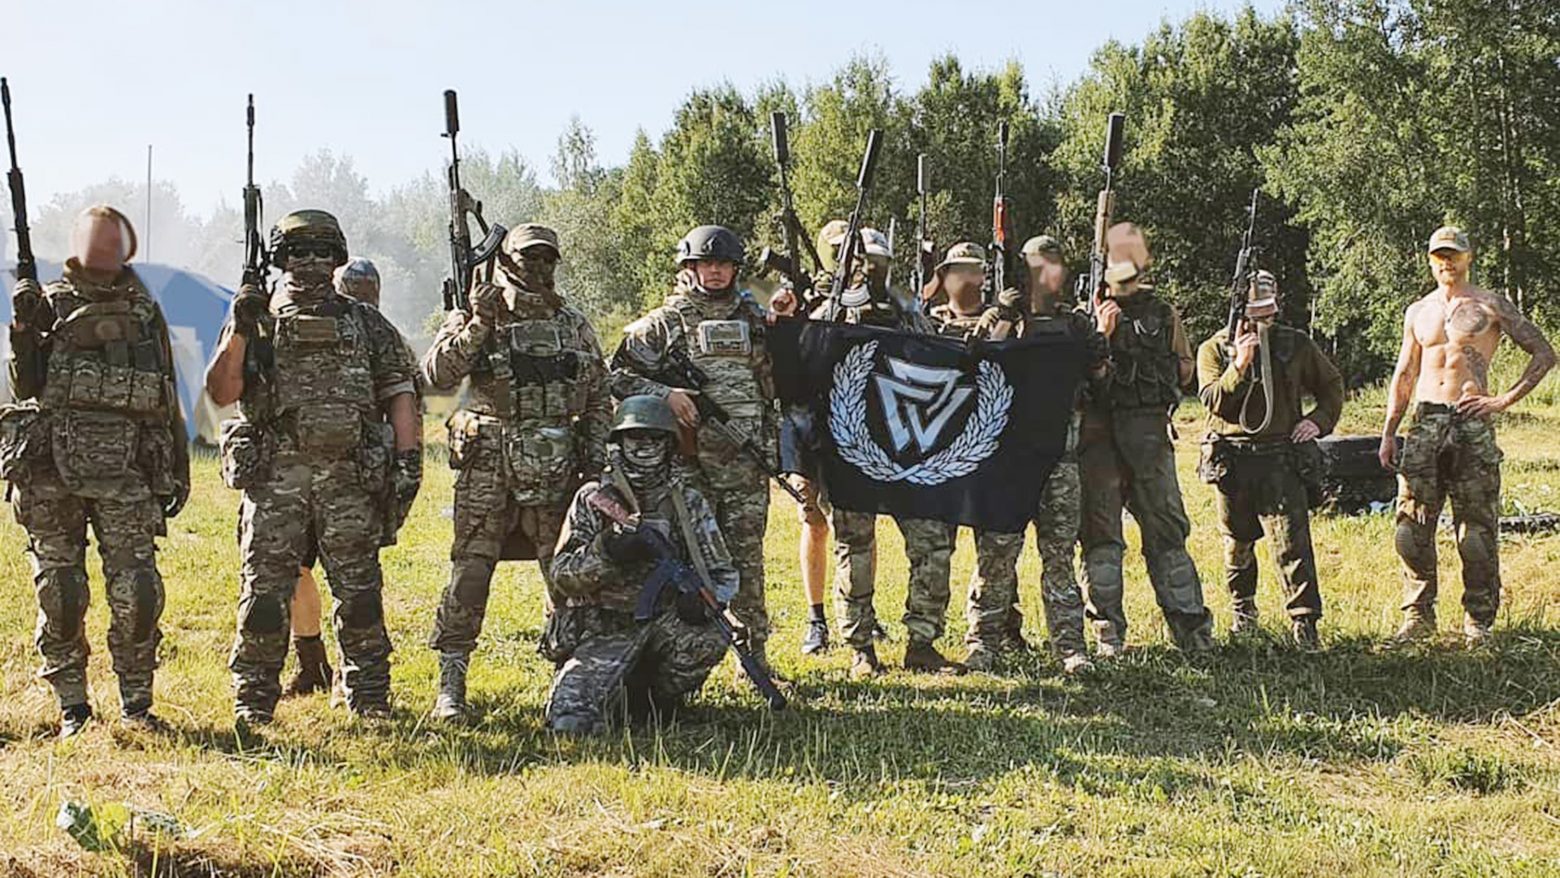 Πόλεμος στην Ουκρανία: Ποιοι είναι οι Ρώσοι νεοναζί μισθοφόροι της οργάνωσης «Rusich» που δρουν στη χώρα;